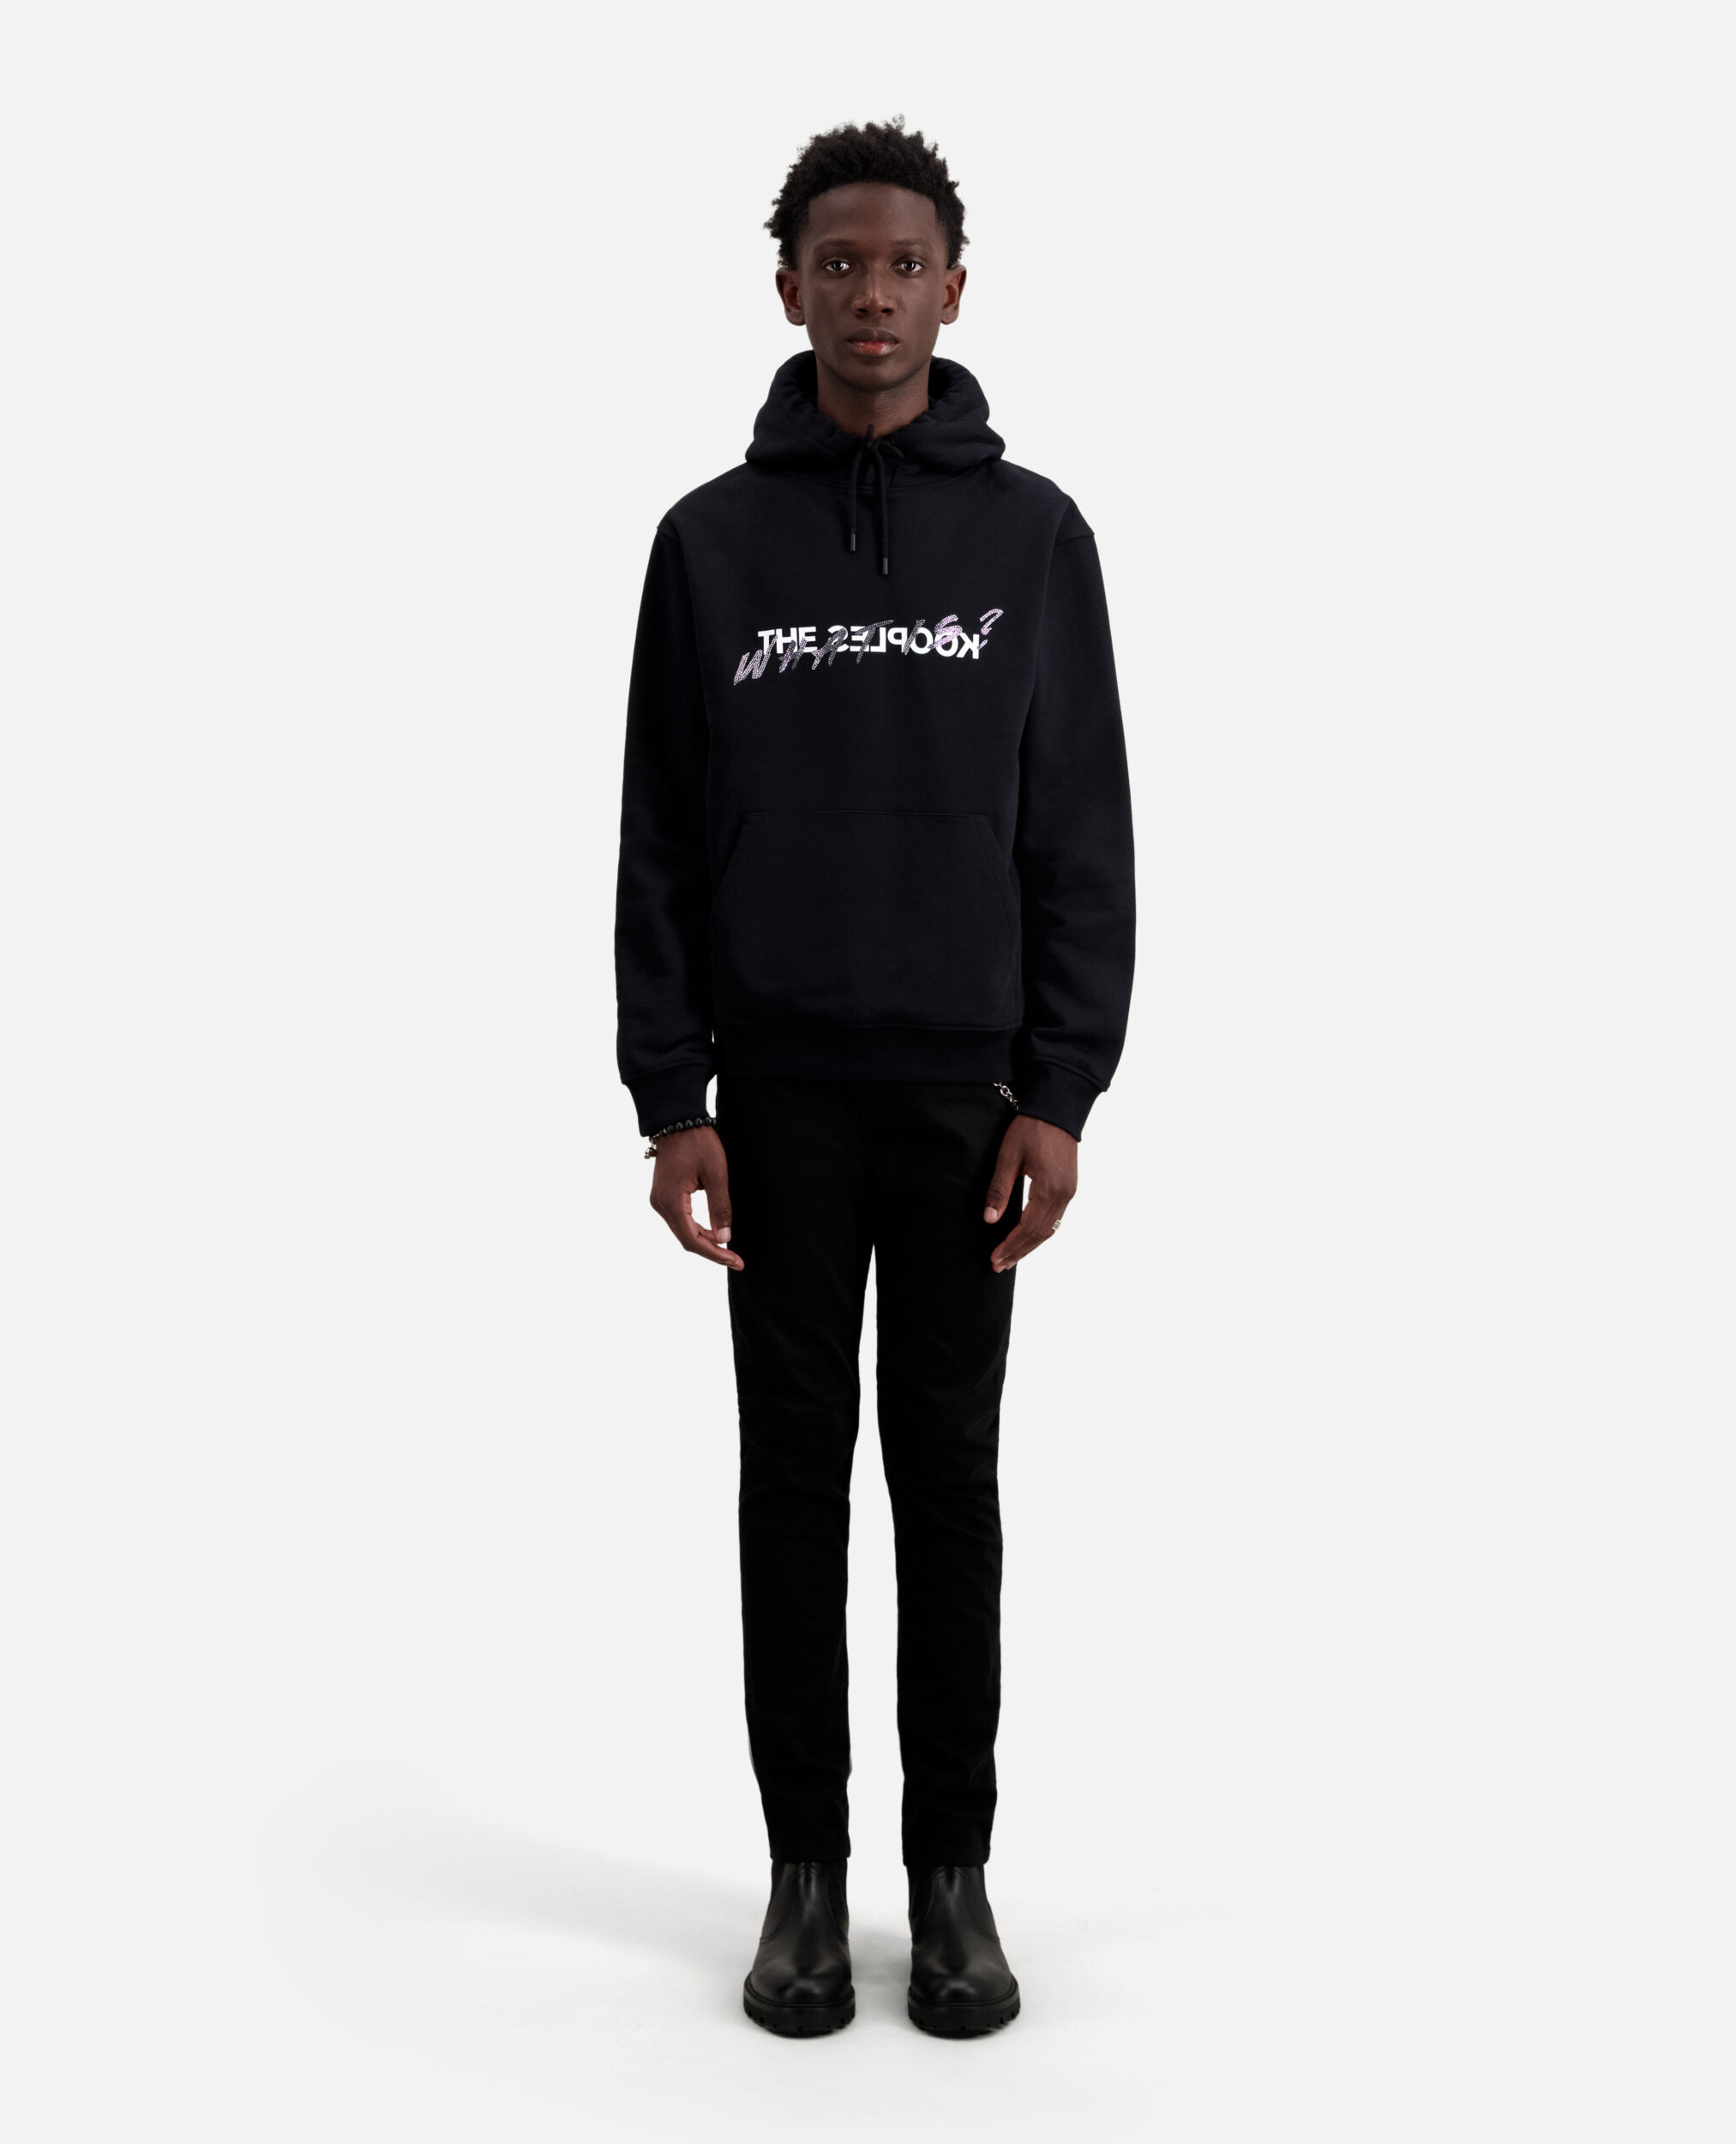 Black What is sweatshirt, BLACK, hi-res image number null